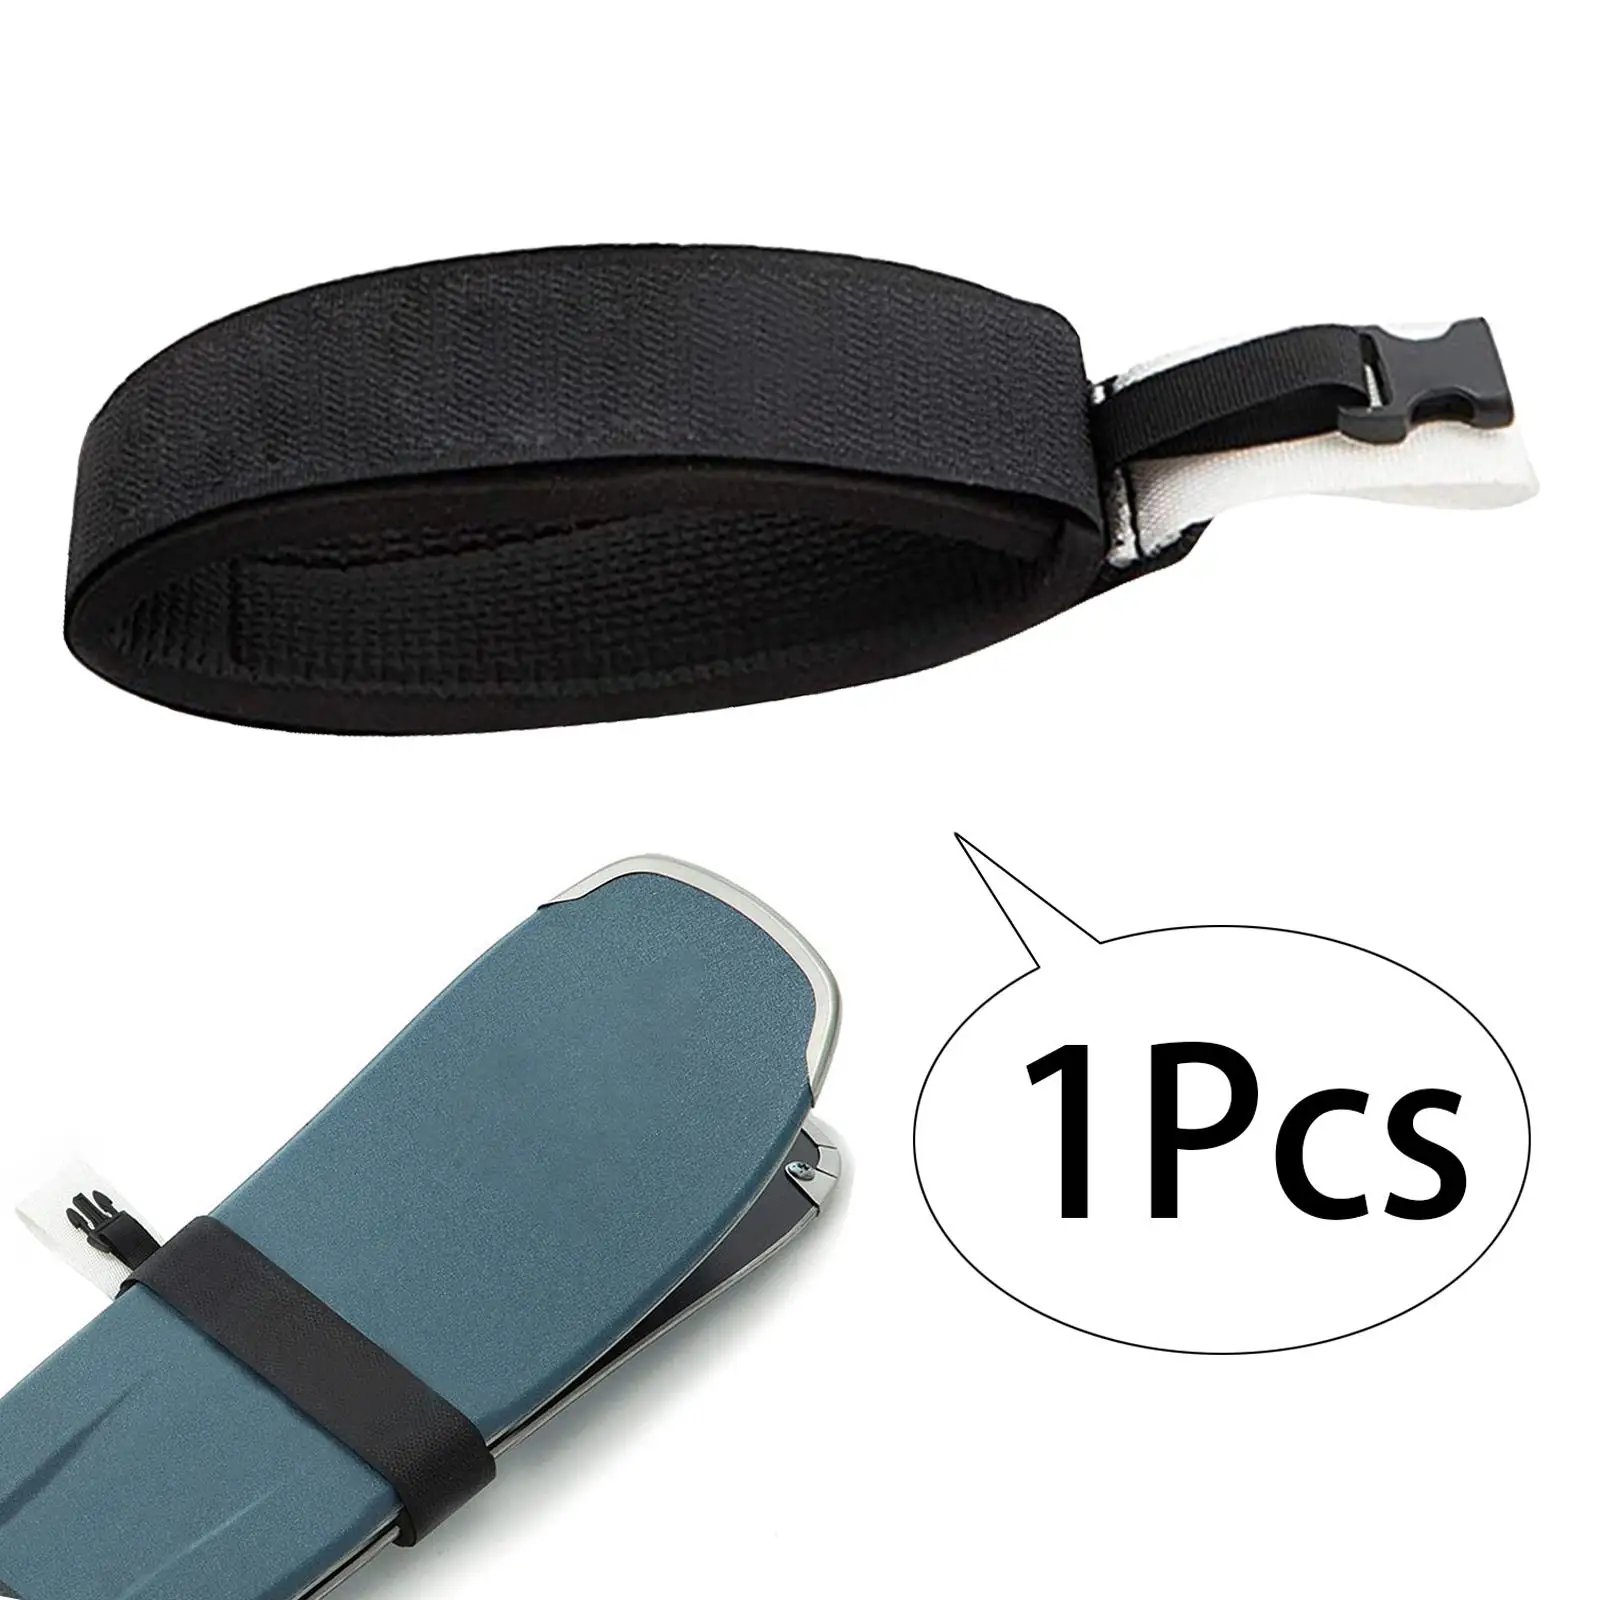 Ski Strap Belt for Carrying Ski Gear Fixing Strap Portable Ski Wrap Ski Fastener